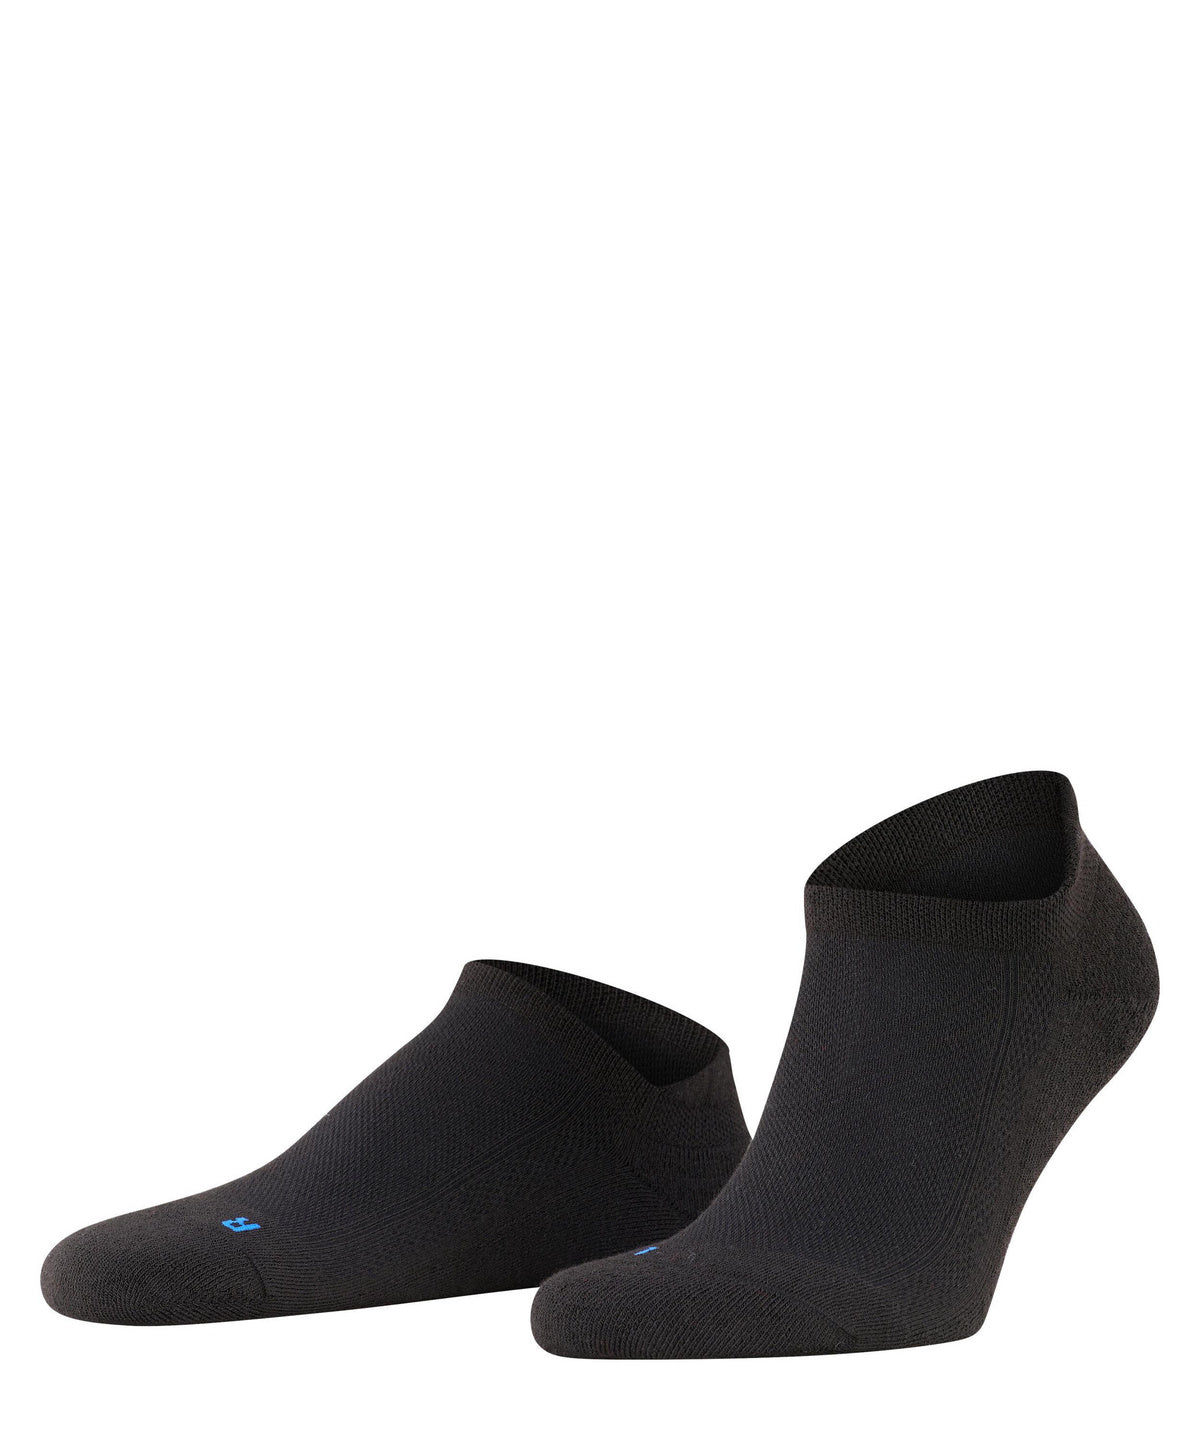 Falke Cool Kick Sneaker Socks, Black